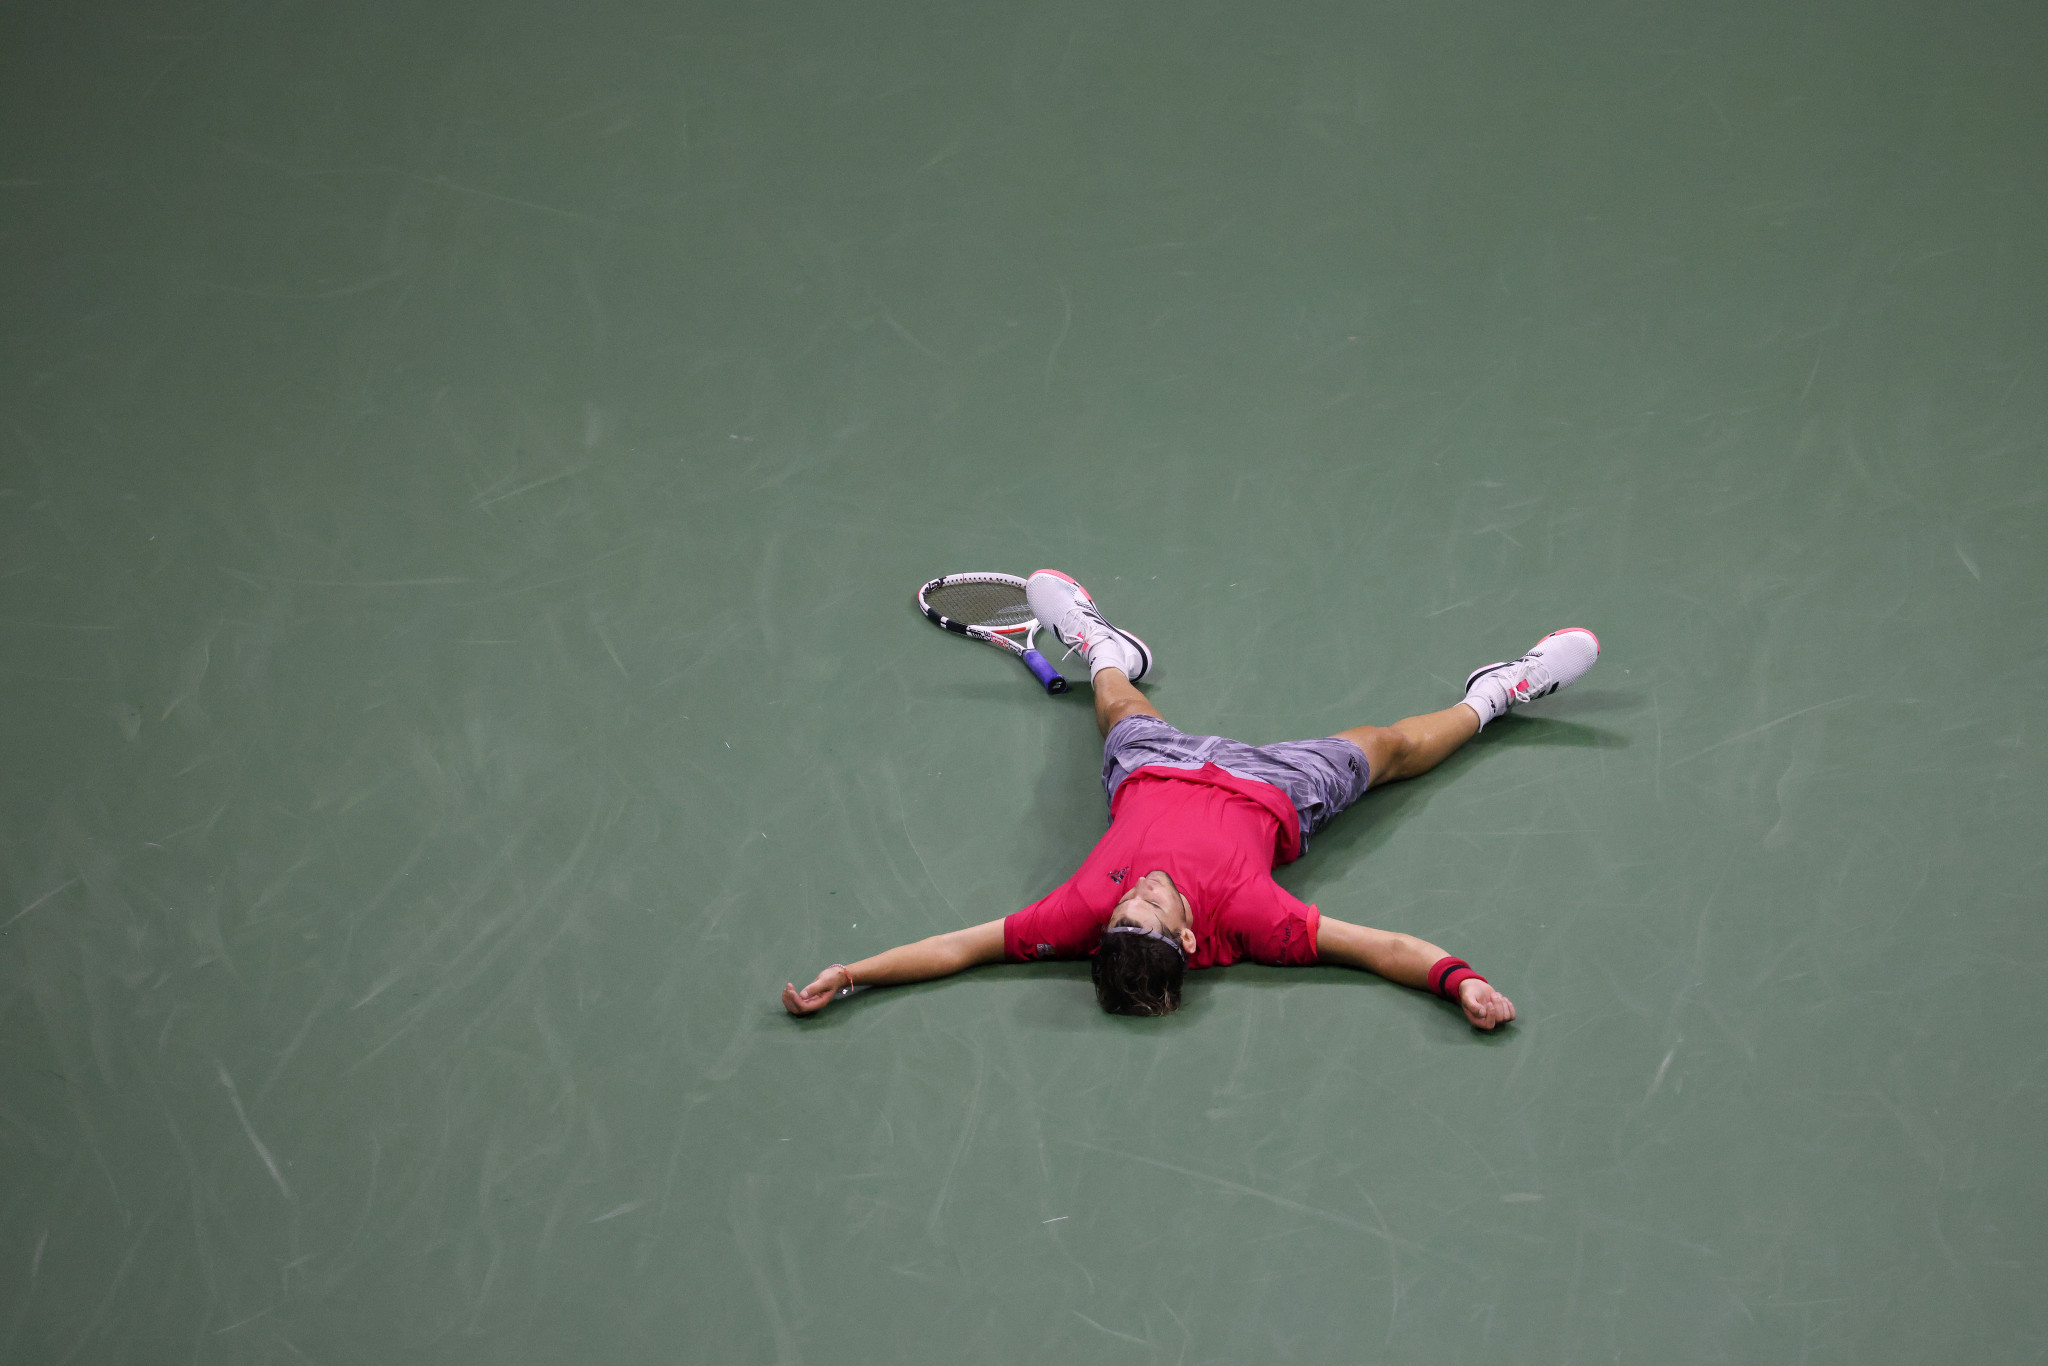 Thiem defeats Zverev to become first new men's Grand Slam winner since 2014